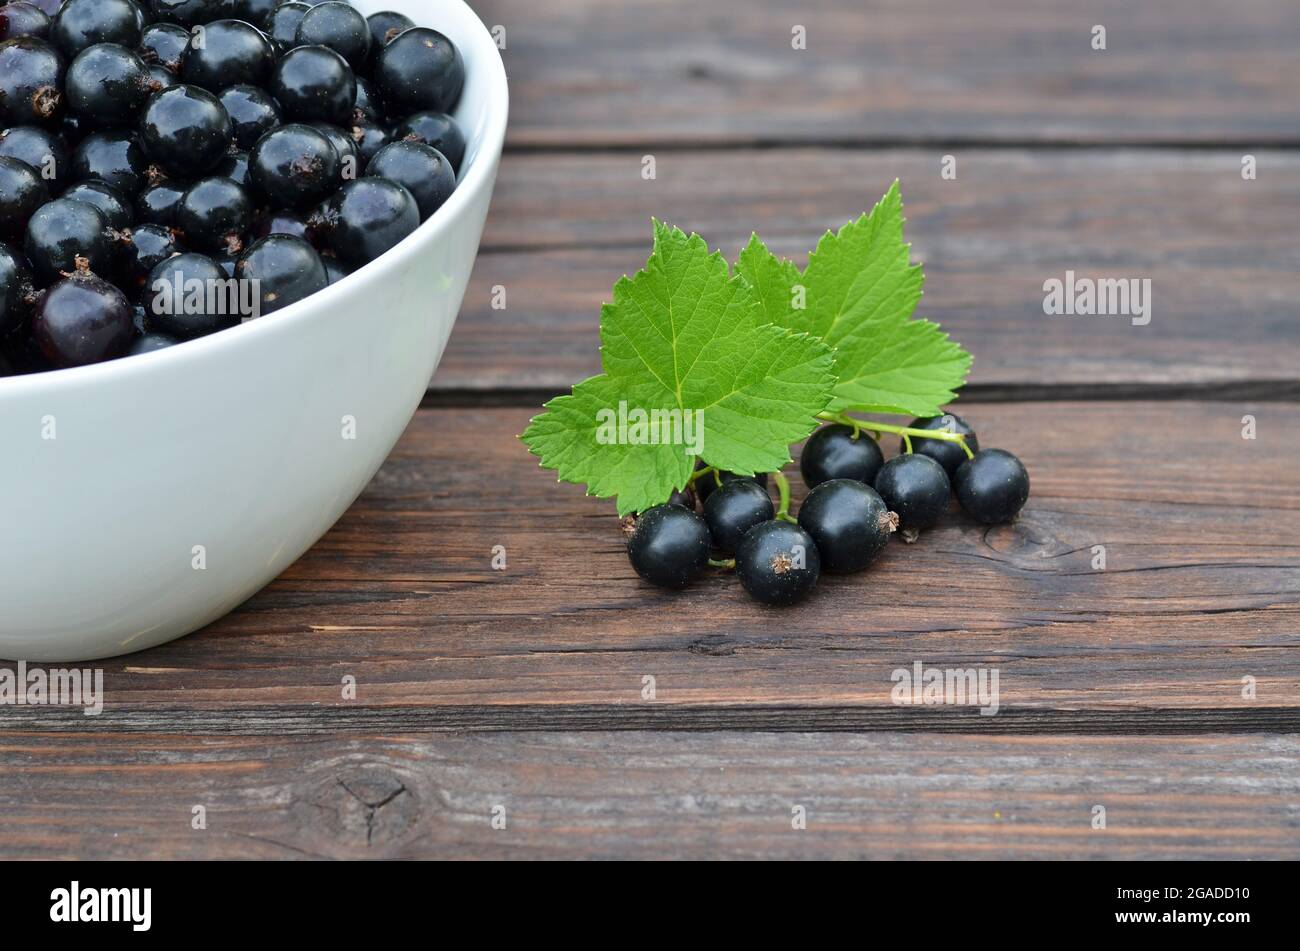 Reife Beeren von schwarzer Johannisbeere mit grünen Blättern auf einem alten Holztisch. Gesunde Ernährung Konzept. Stockfoto